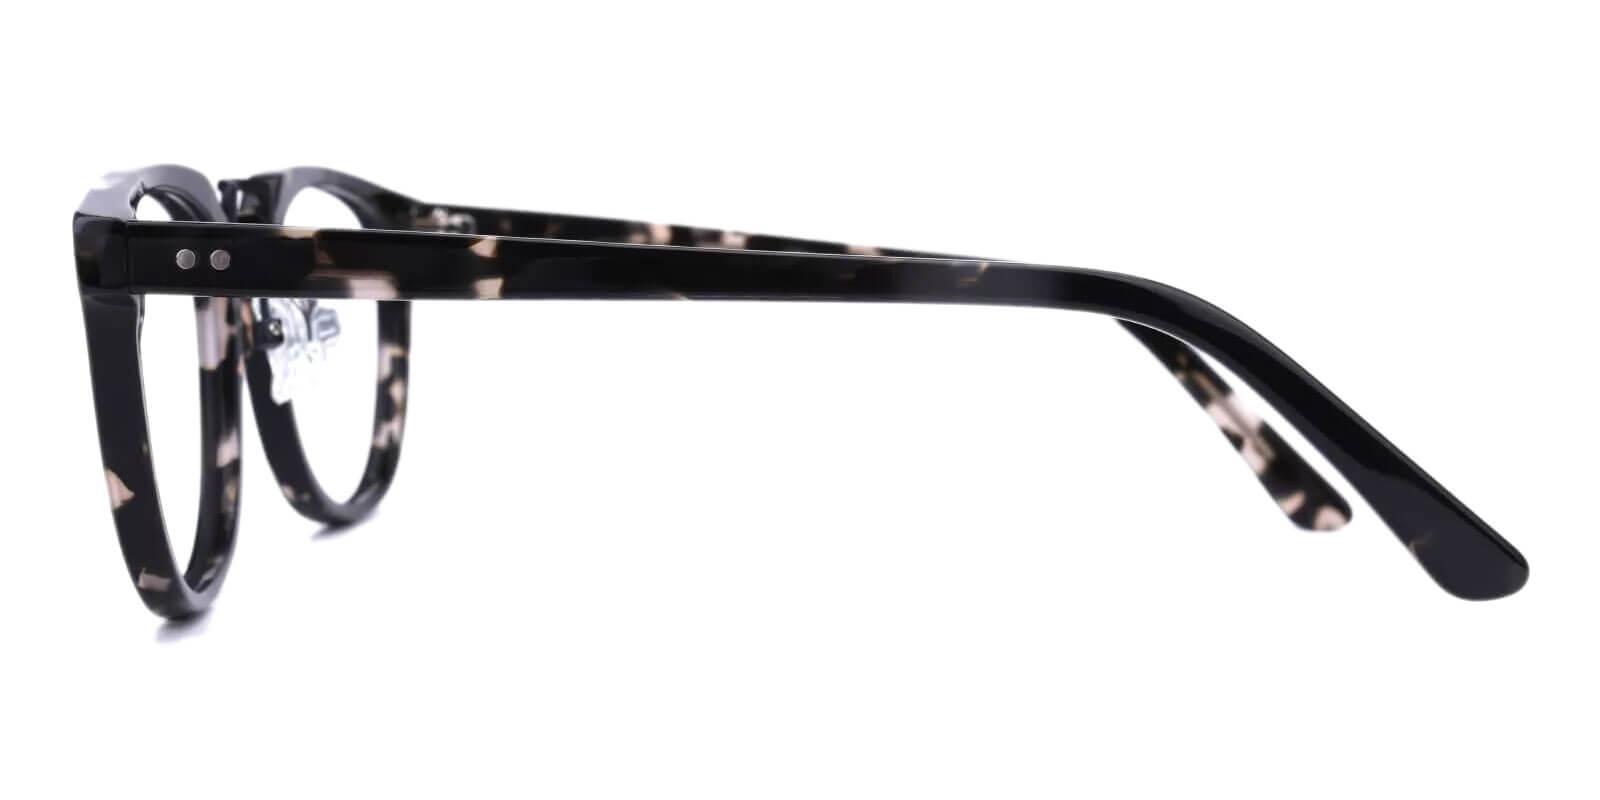 Latrobe Pattern Acetate Eyeglasses , NosePads Frames from ABBE Glasses